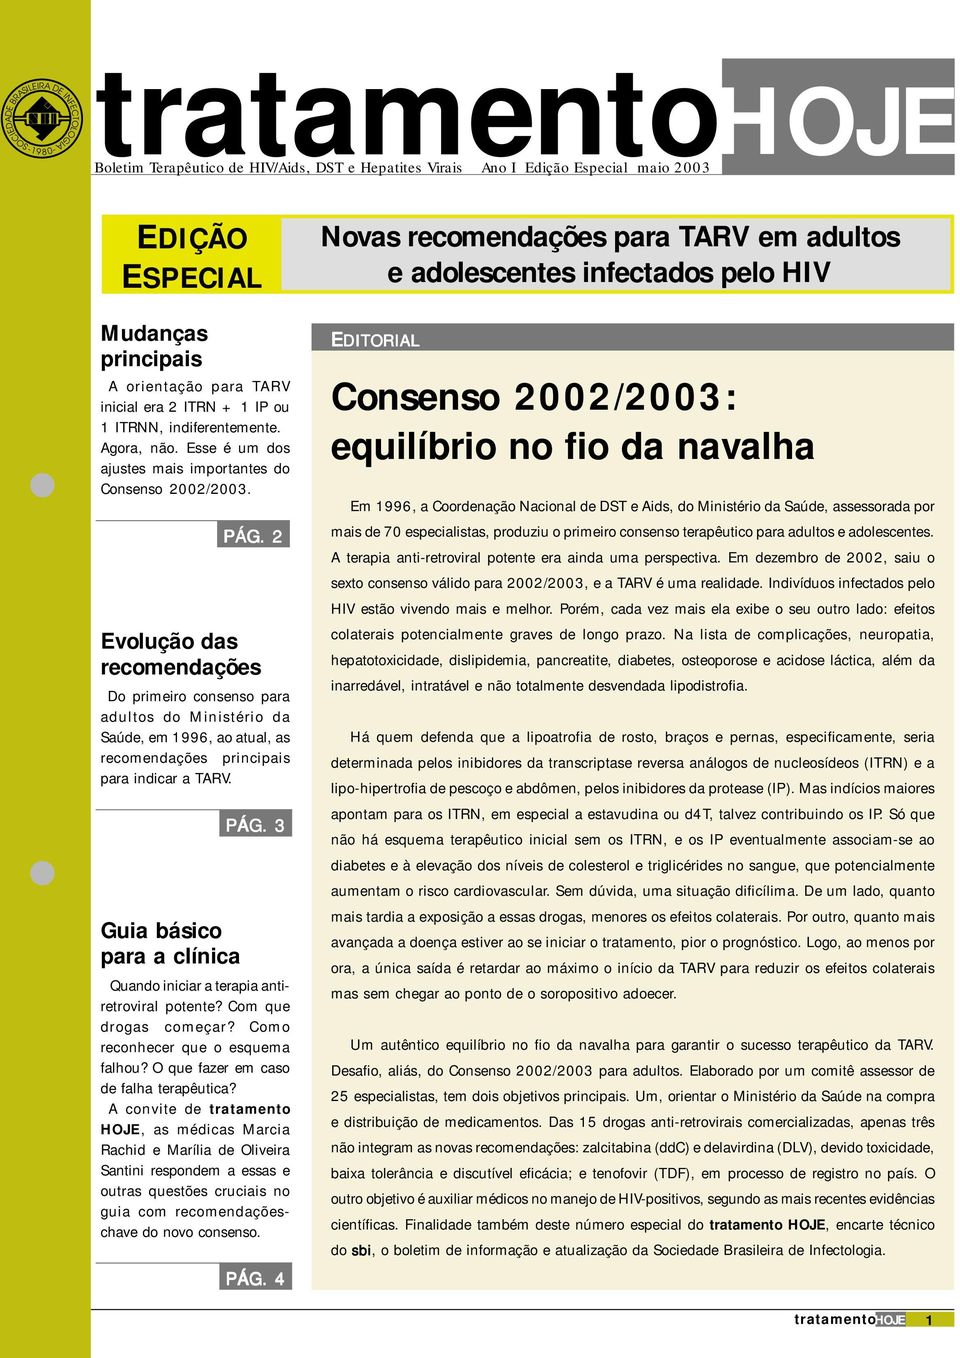 2 Evolução das recomendações Do primeiro consenso para adultos do Ministério da Saúde, em 1996, ao atual, as recomendações principais para indicar a TARV. Guia básico para a clínica PÁG.